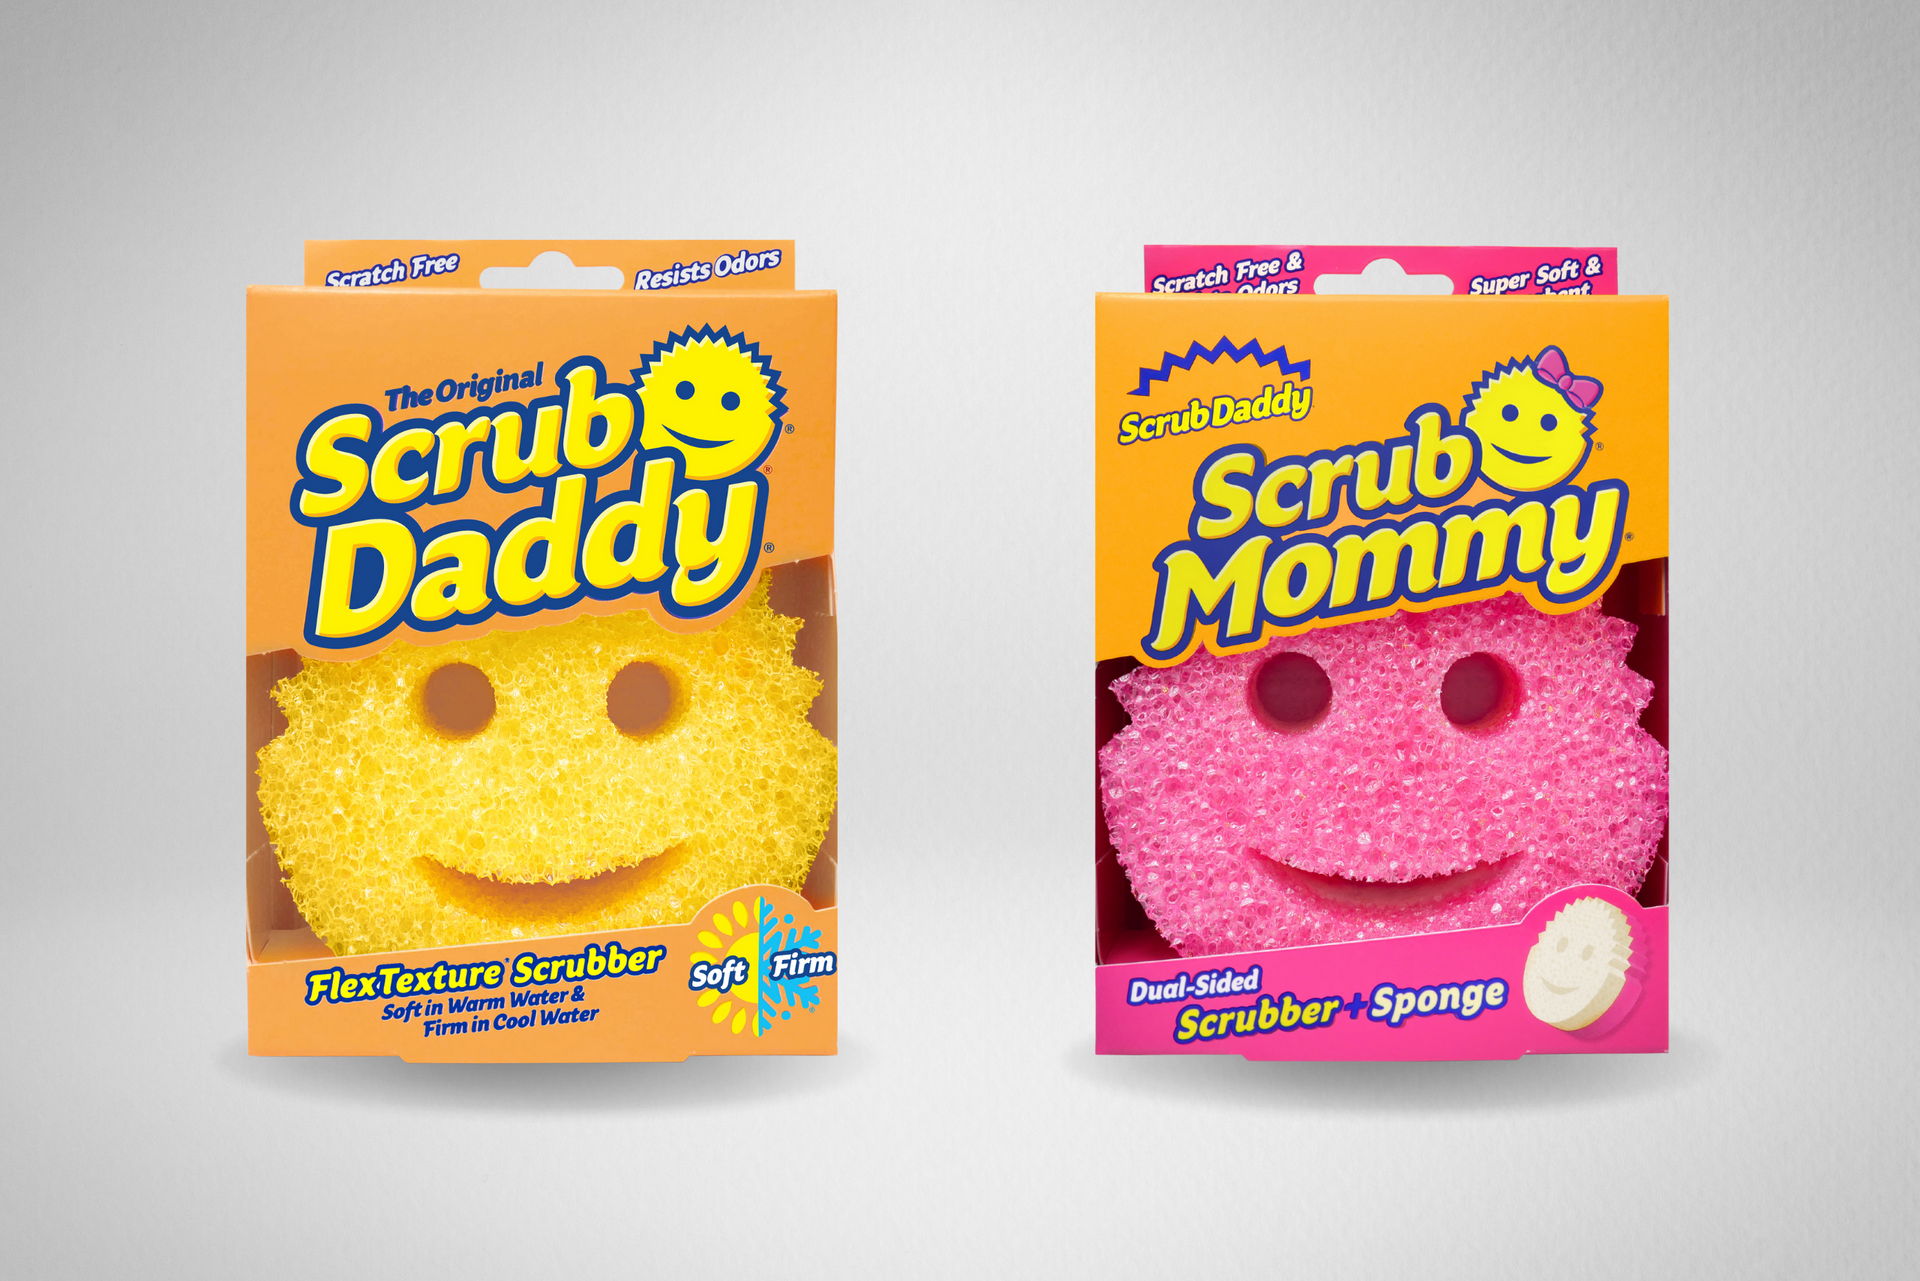 Scratch-Free Scrub Mommy